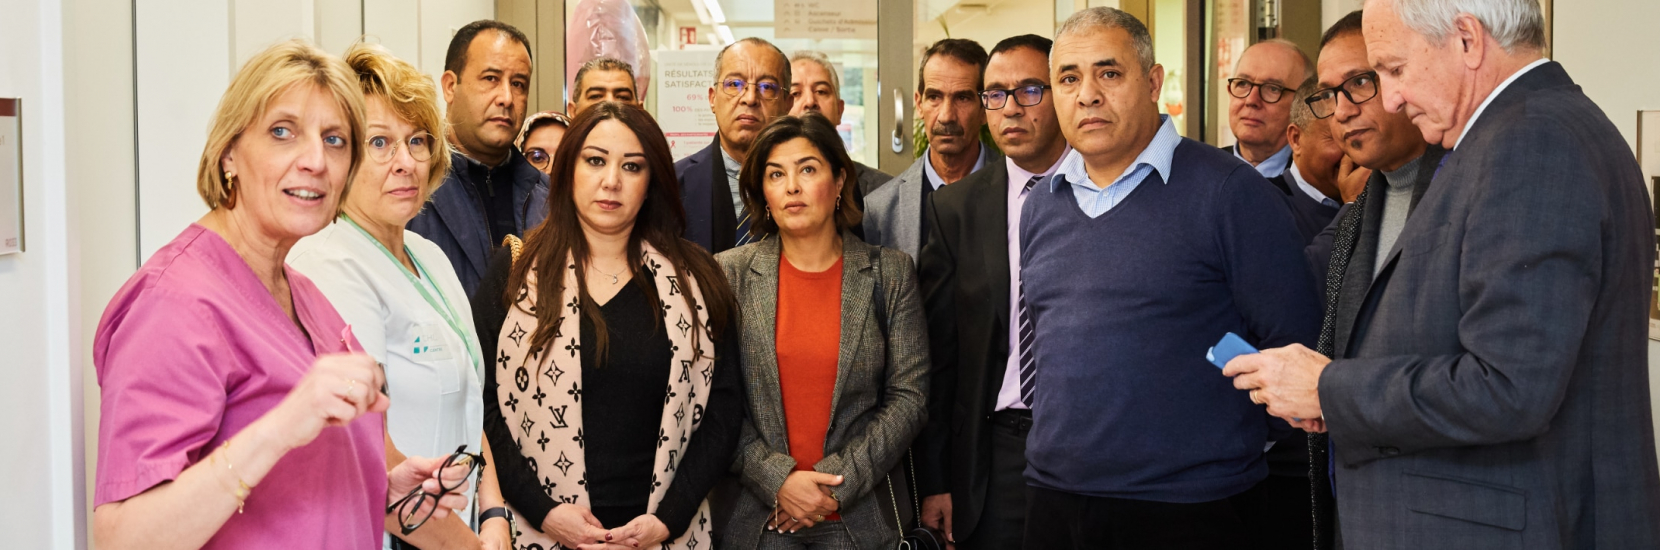 Visite d'une délégation du Ministère de la Santé marocaine et de directeurs d'hôpitaux marocains au CHL